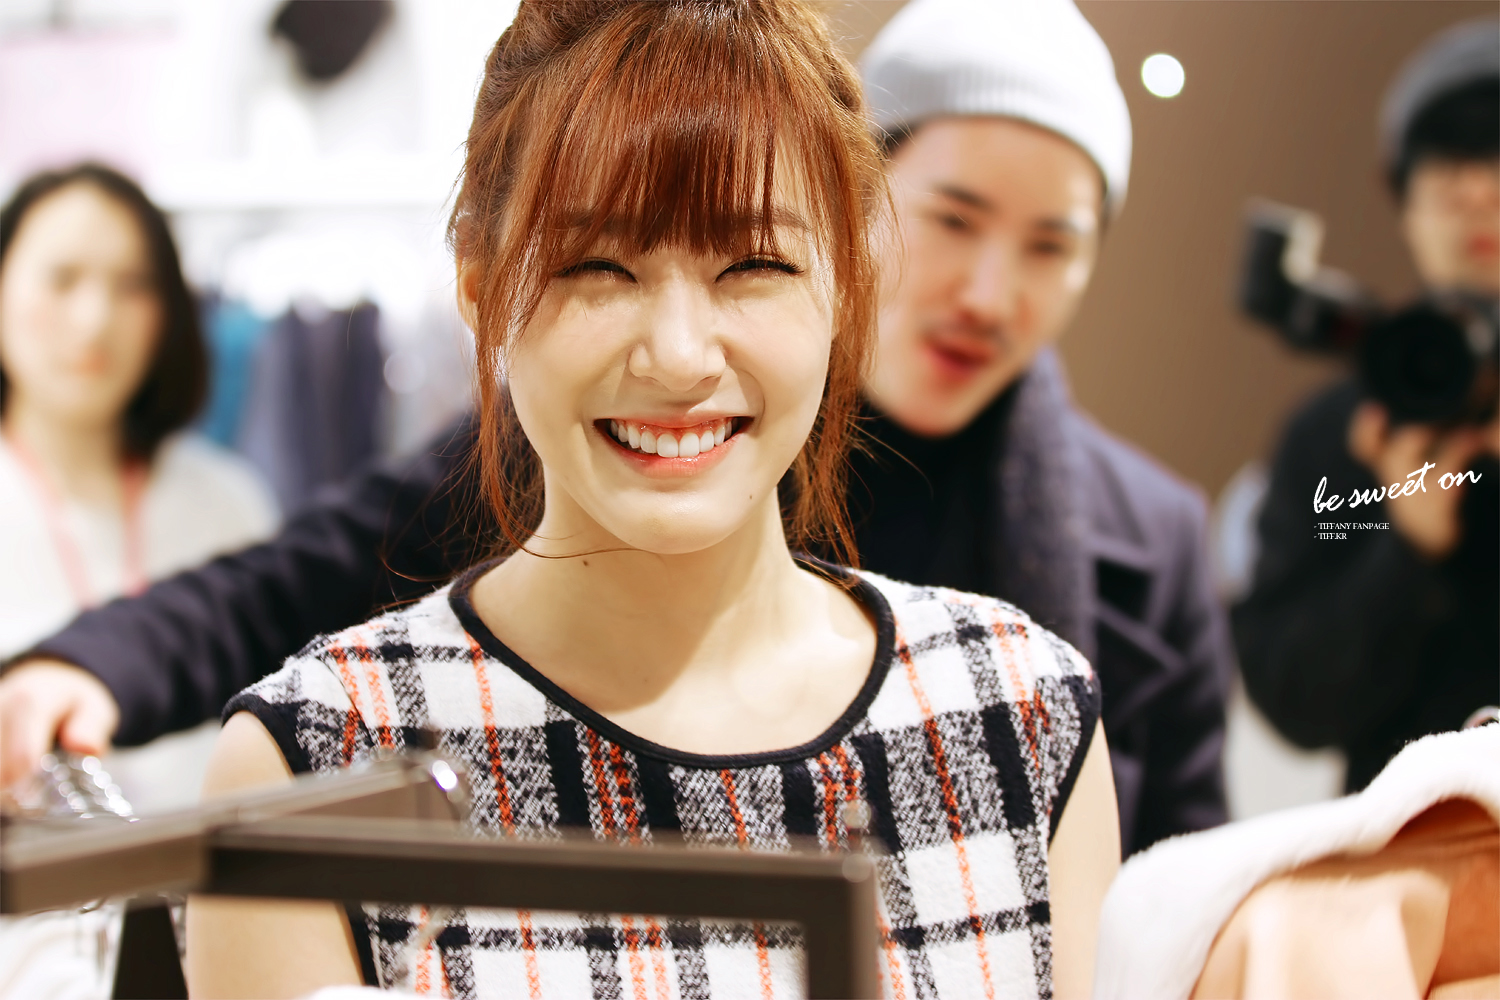 [PIC][28-11-2013]Tiffany ghé thăm cửa hàng "QUA" ở Hyundai Department Store vào trưa nay - Page 3 2210F746529C93D1254FB3